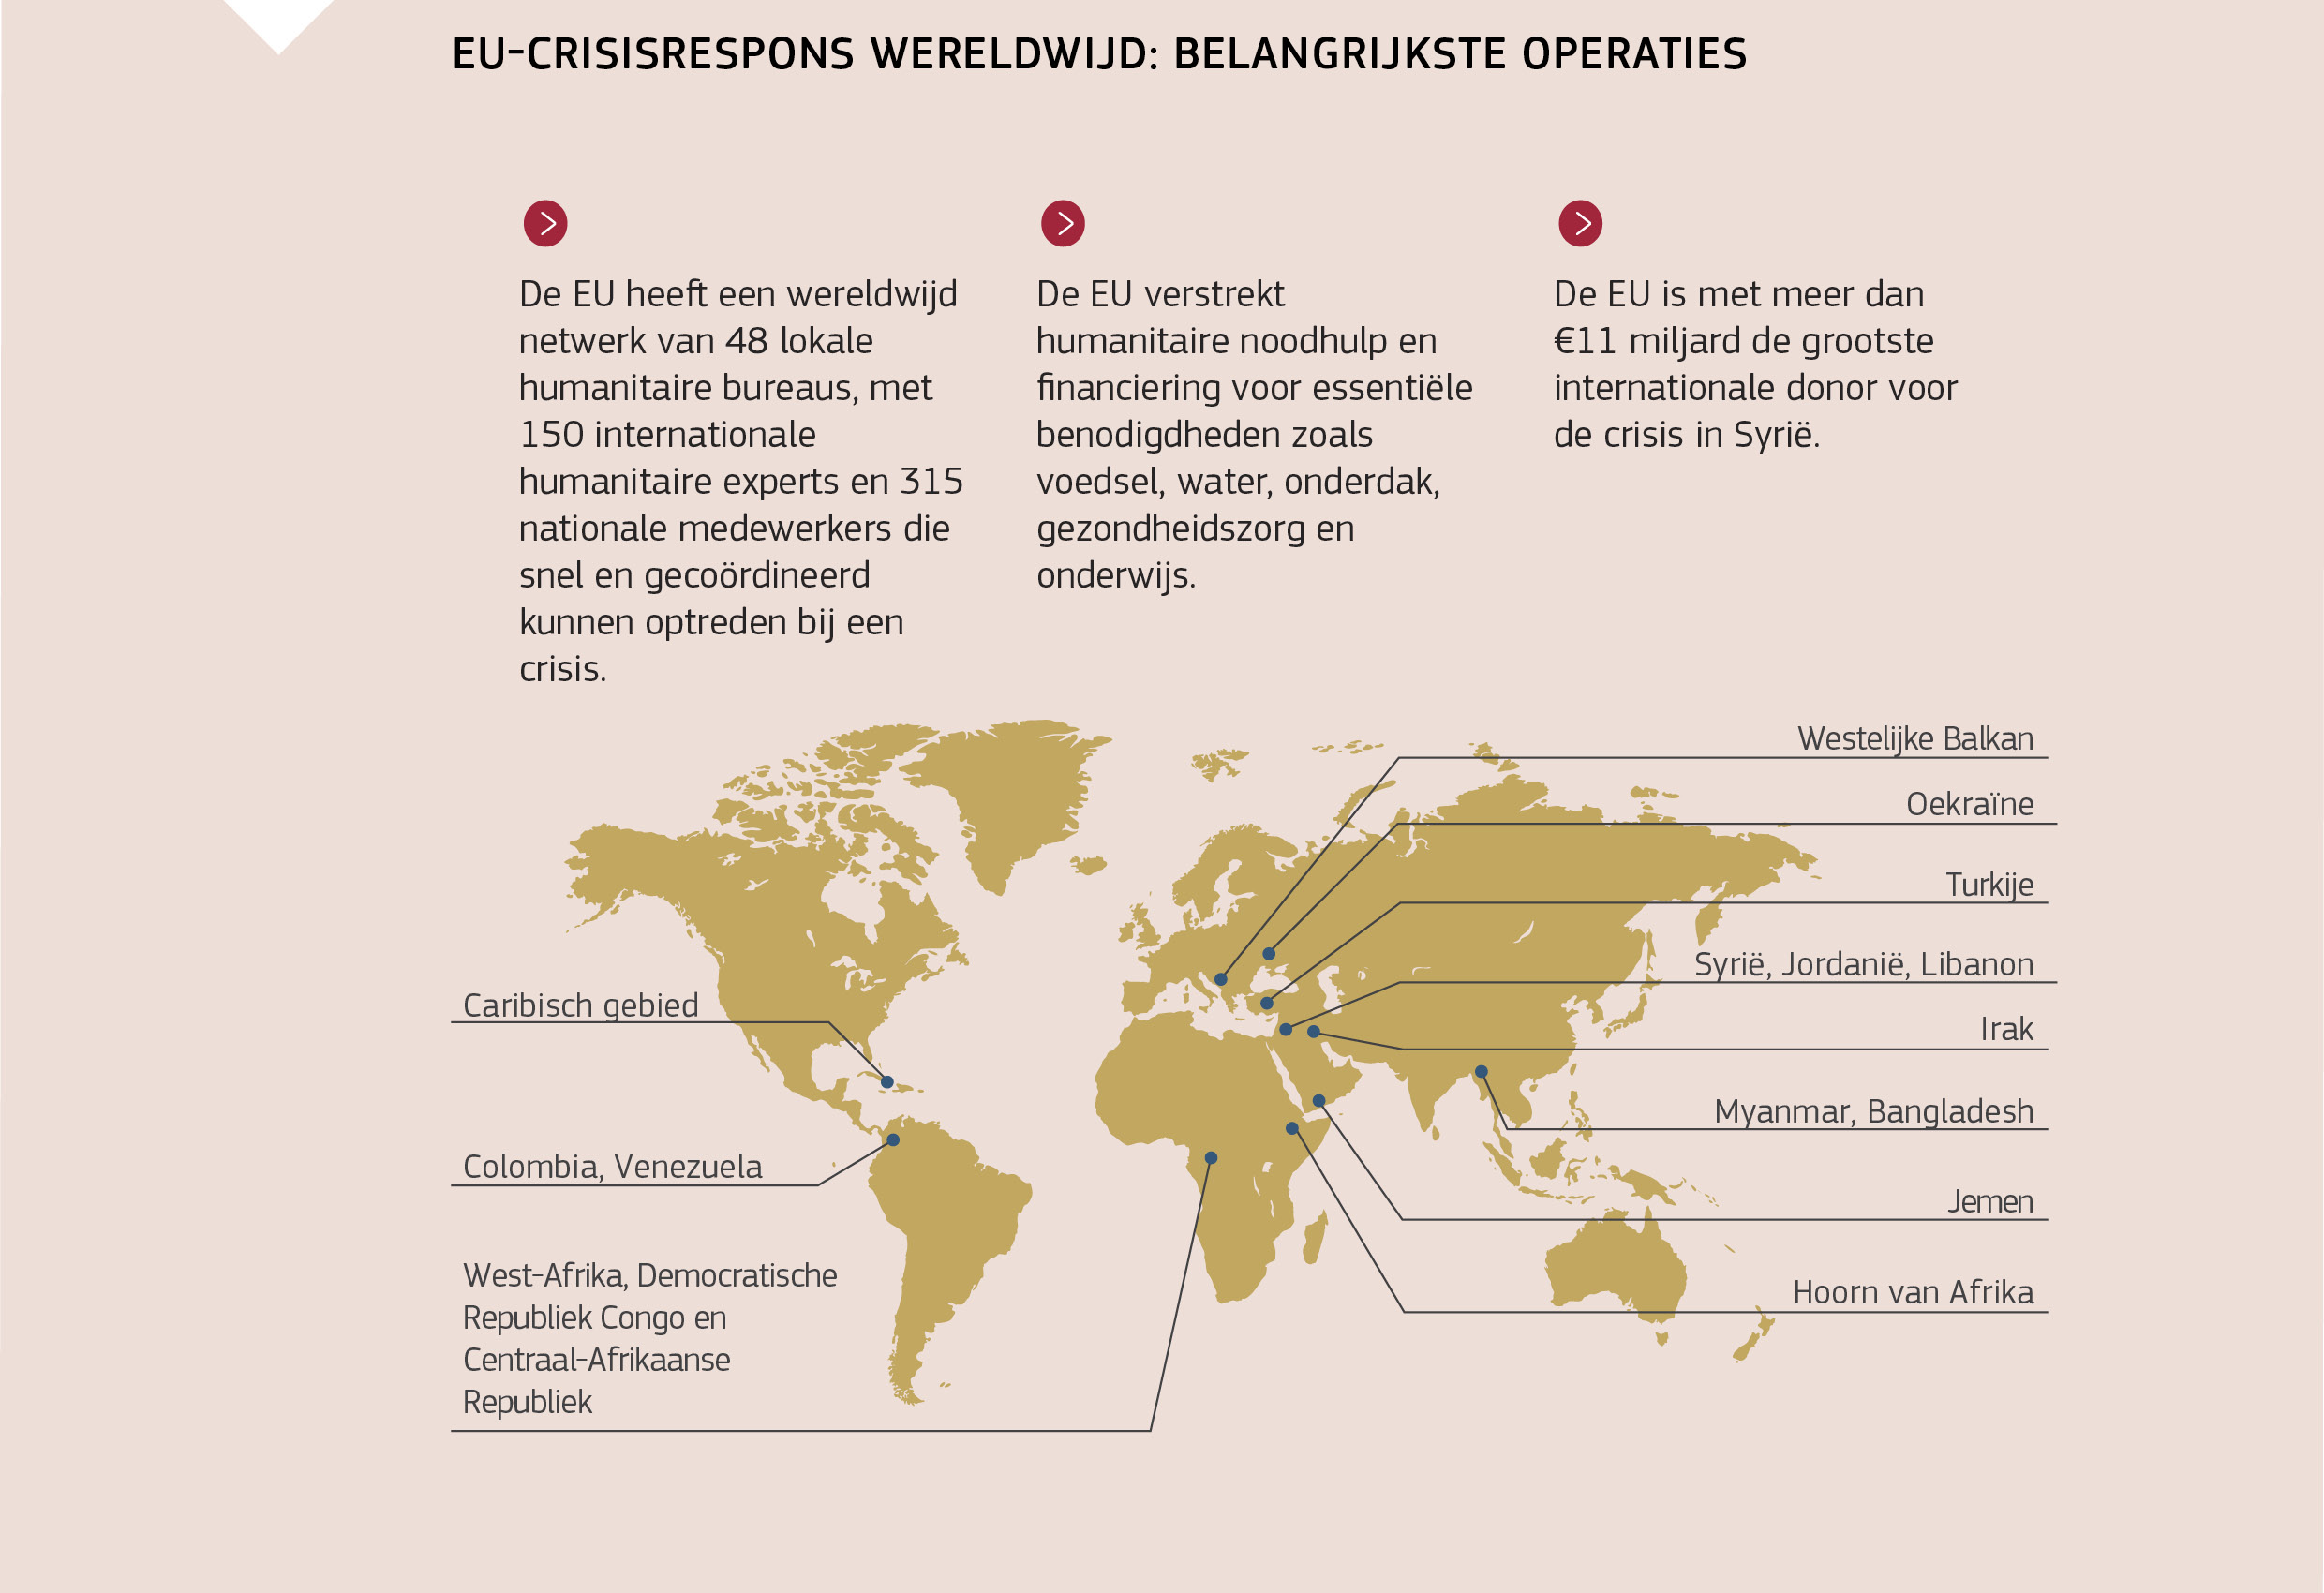 EU-CRISISRESPONS WERELDWIJD: BELANGRIJKSTE OPERATIES